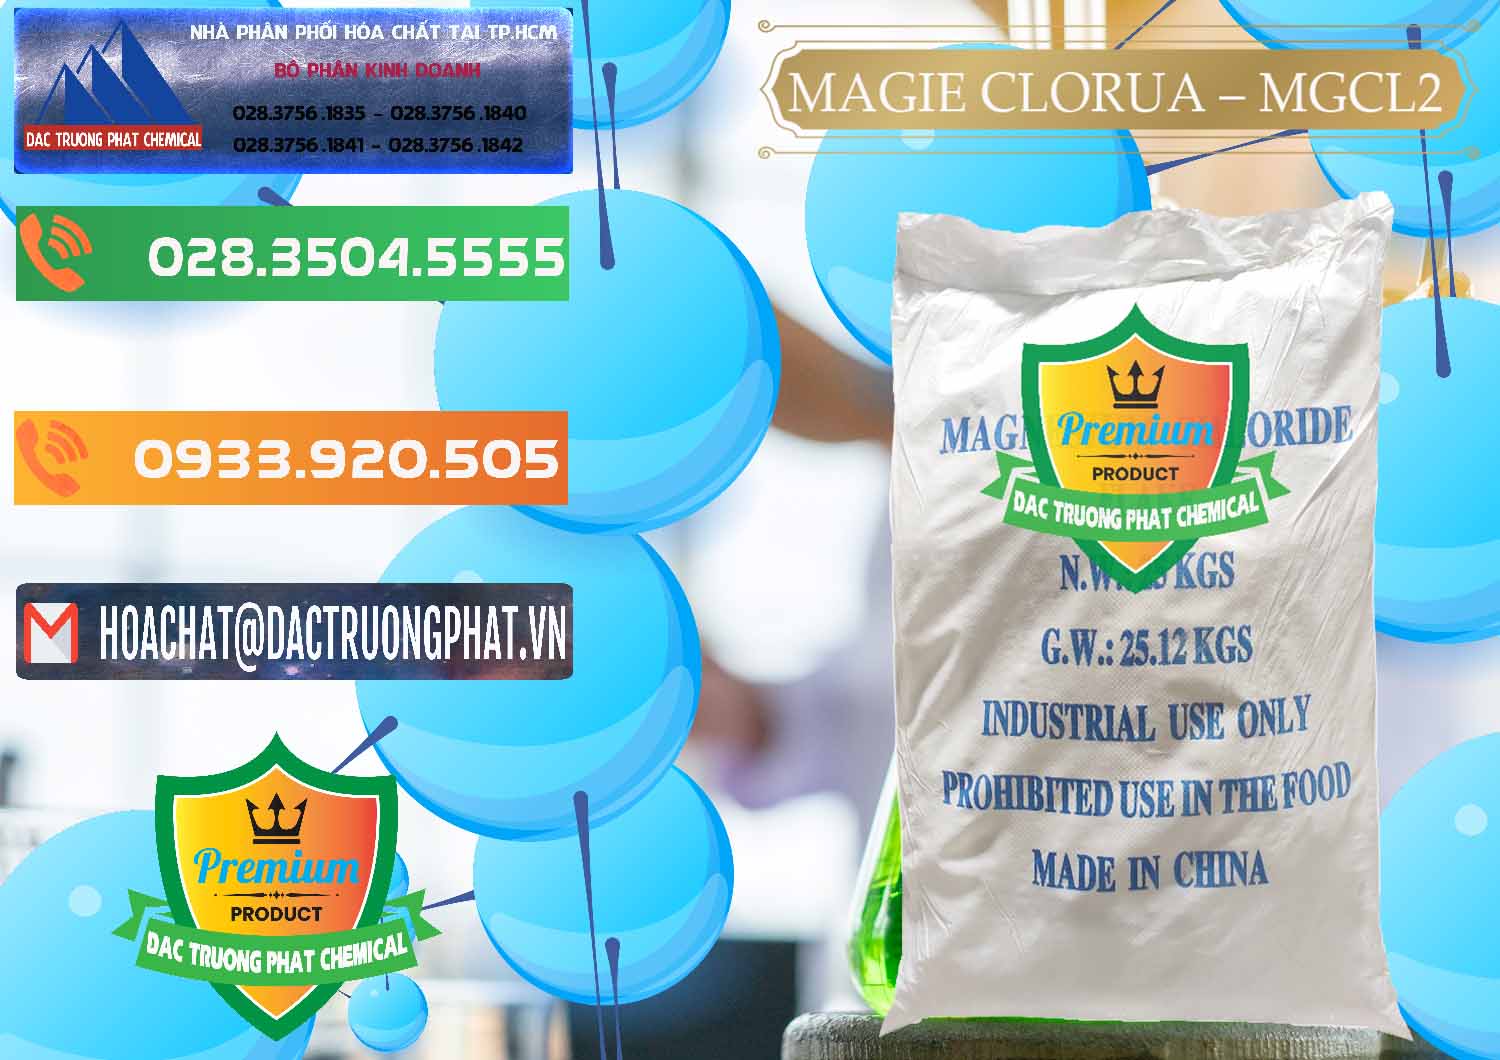 Cung cấp _ bán Magie Clorua – MGCL2 96% Dạng Vảy Trung Quốc China - 0091 - Cty phân phối & cung cấp hóa chất tại TP.HCM - hoachatxulynuoc.com.vn